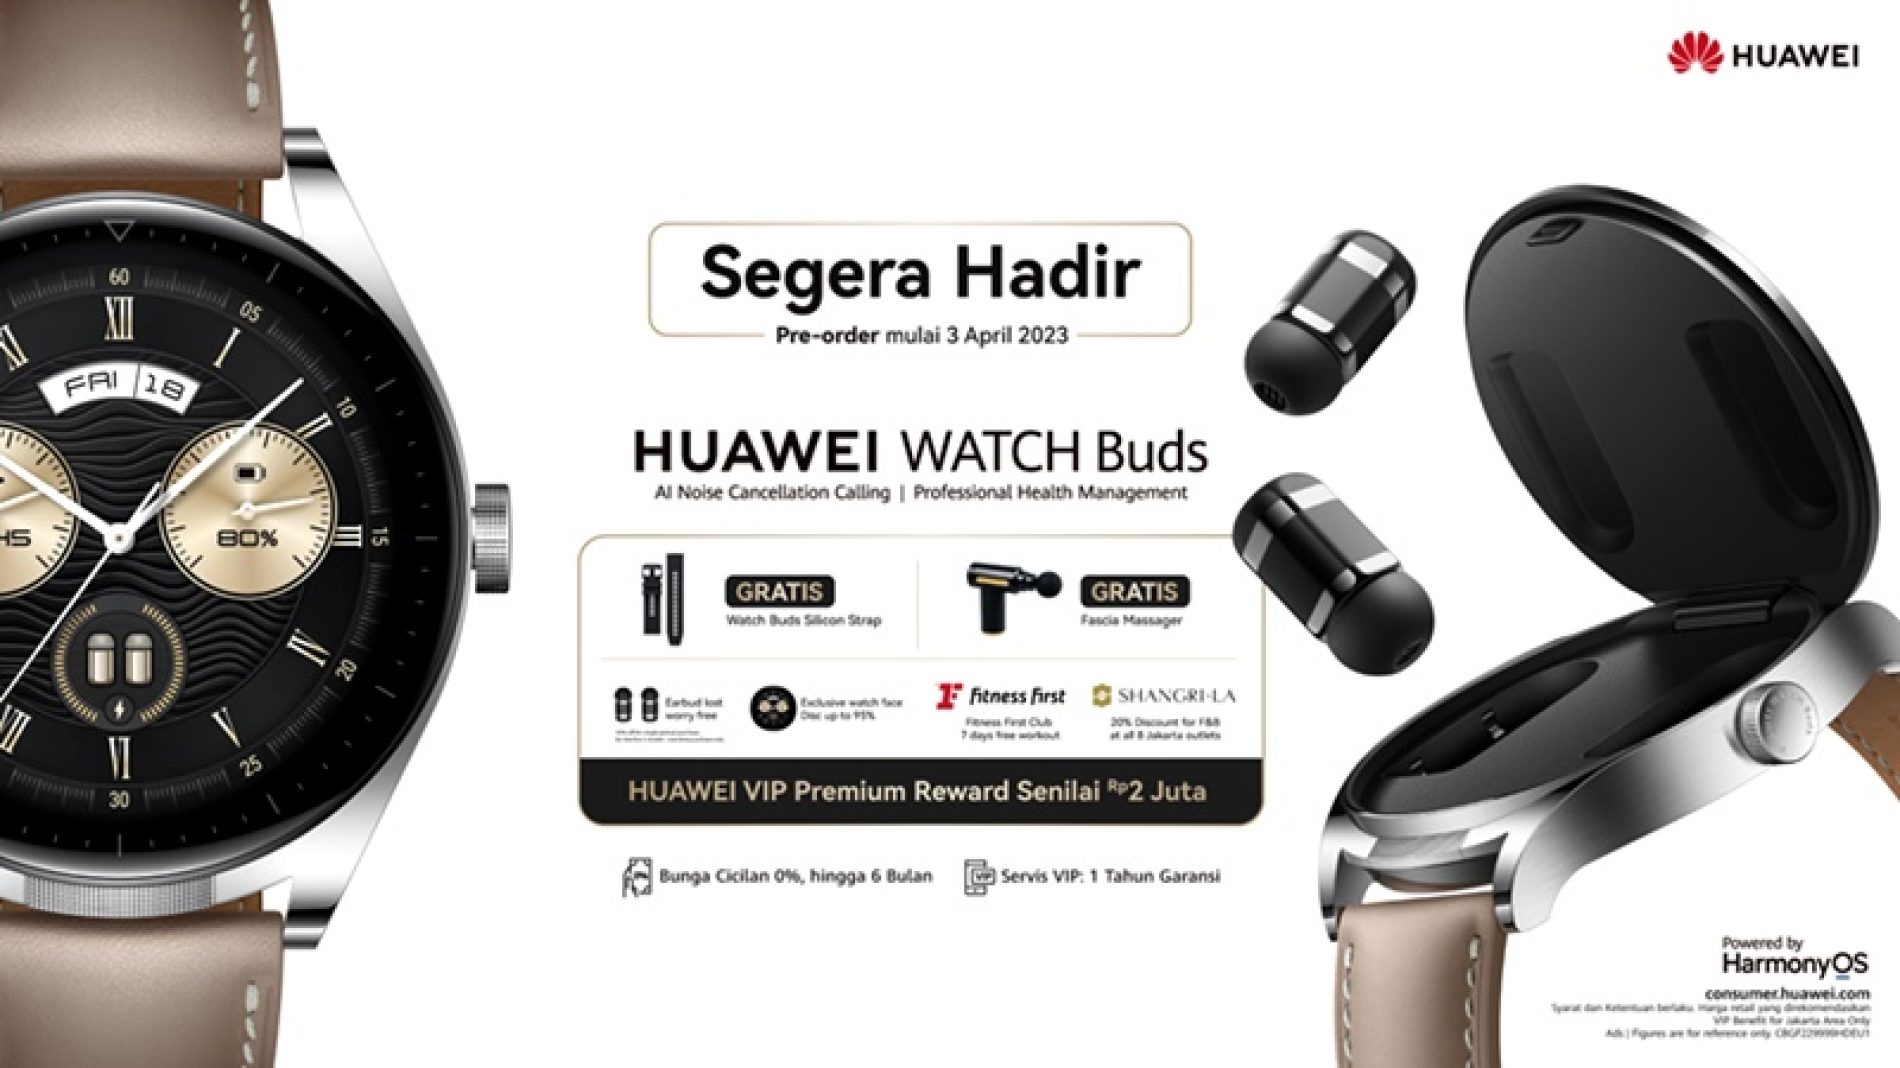 Perangkat 2 in1 Pertama di Indonesia Huawei Watch Buds 3 April Resmi Hadir